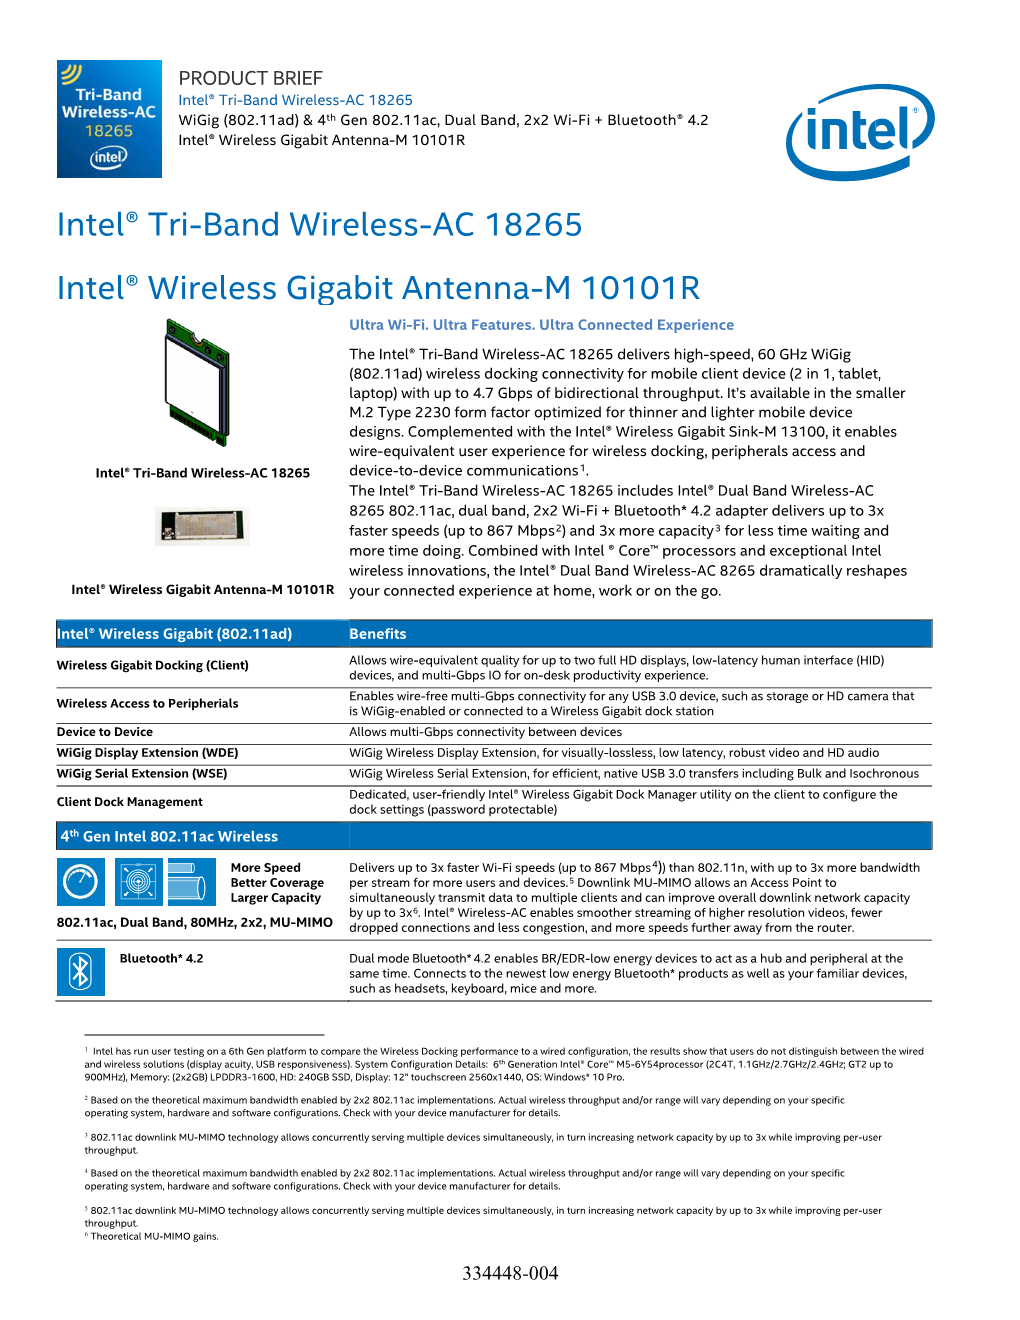 Intel® Tri-Band Wireless-AC 18265 Wigig (802.11Ad) & 4Th Gen 802.11Ac, Dual Band, 2X2 Wi-Fi + Bluetooth® 4.2 Intel® Wireless Gigabit Antenna-M 10101R